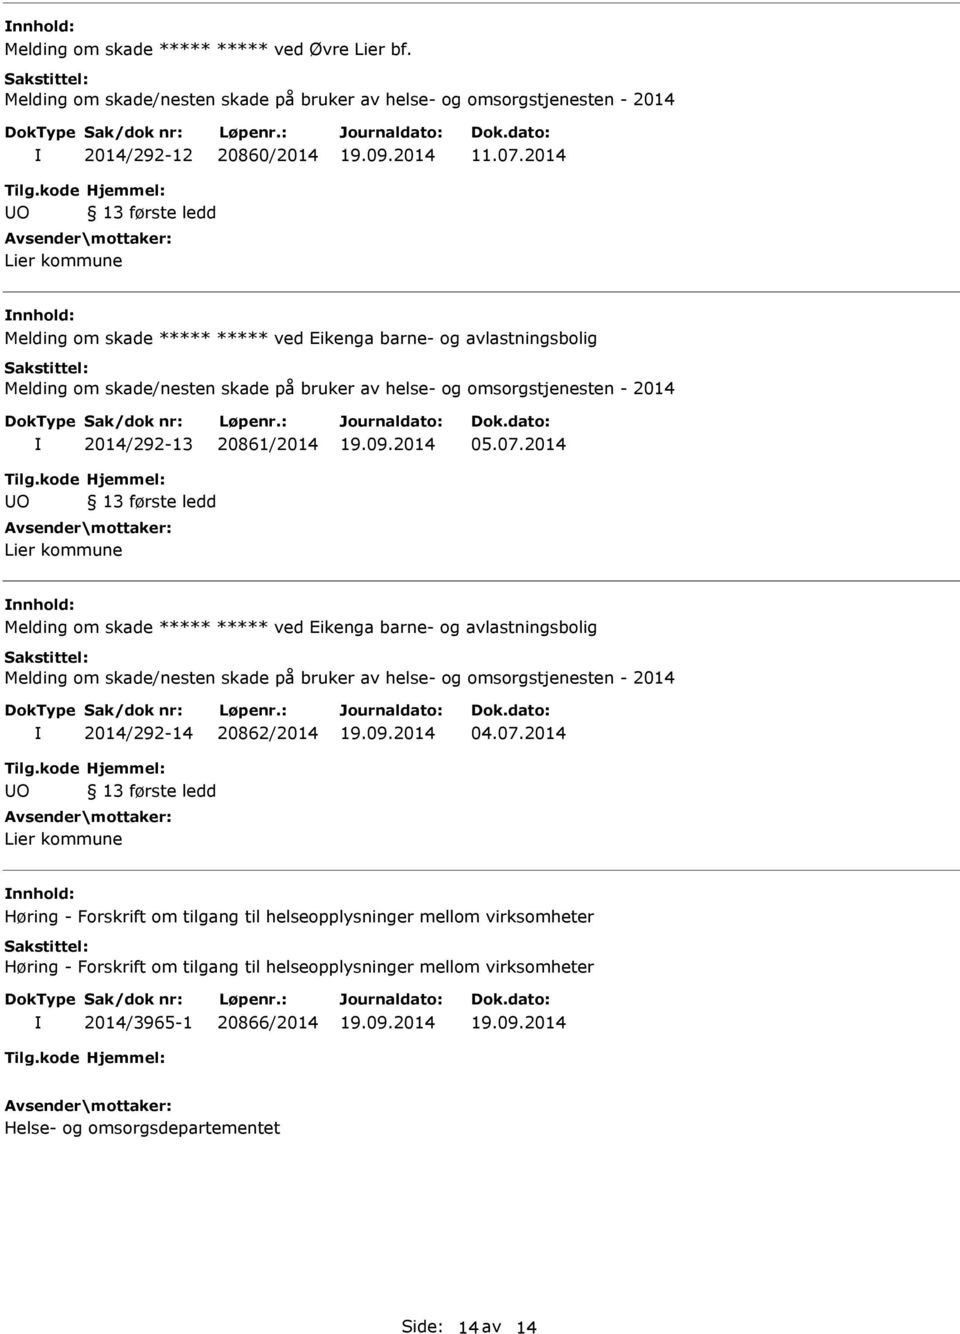 2014 Melding om skade ved Eikenga barne- og avlastningsbolig 2014/292-14 20862/2014 04.07.